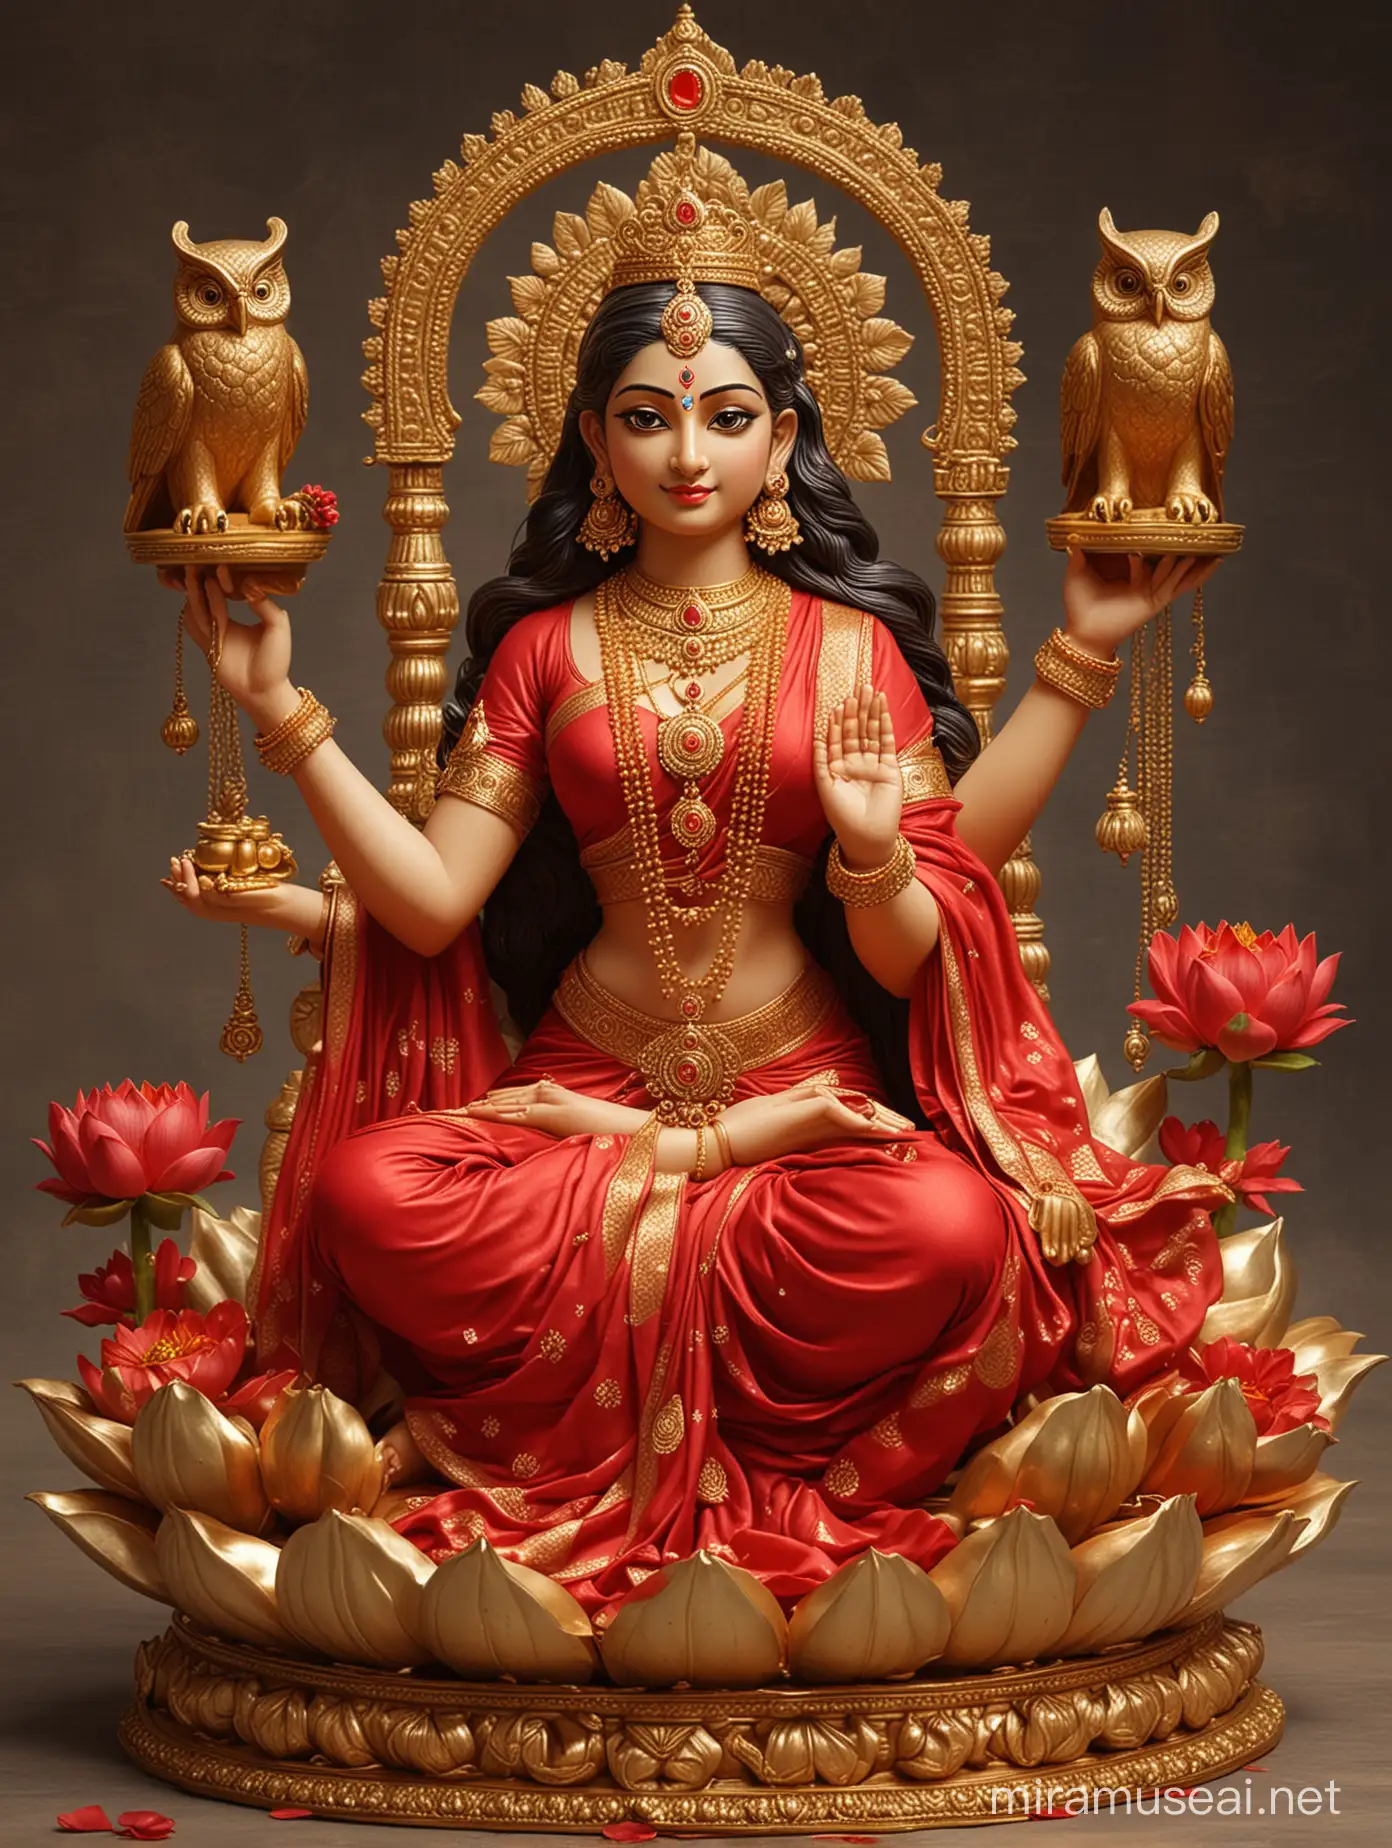 Divine Goddess Lakshmi Blessing Wealth from Lotus Throne